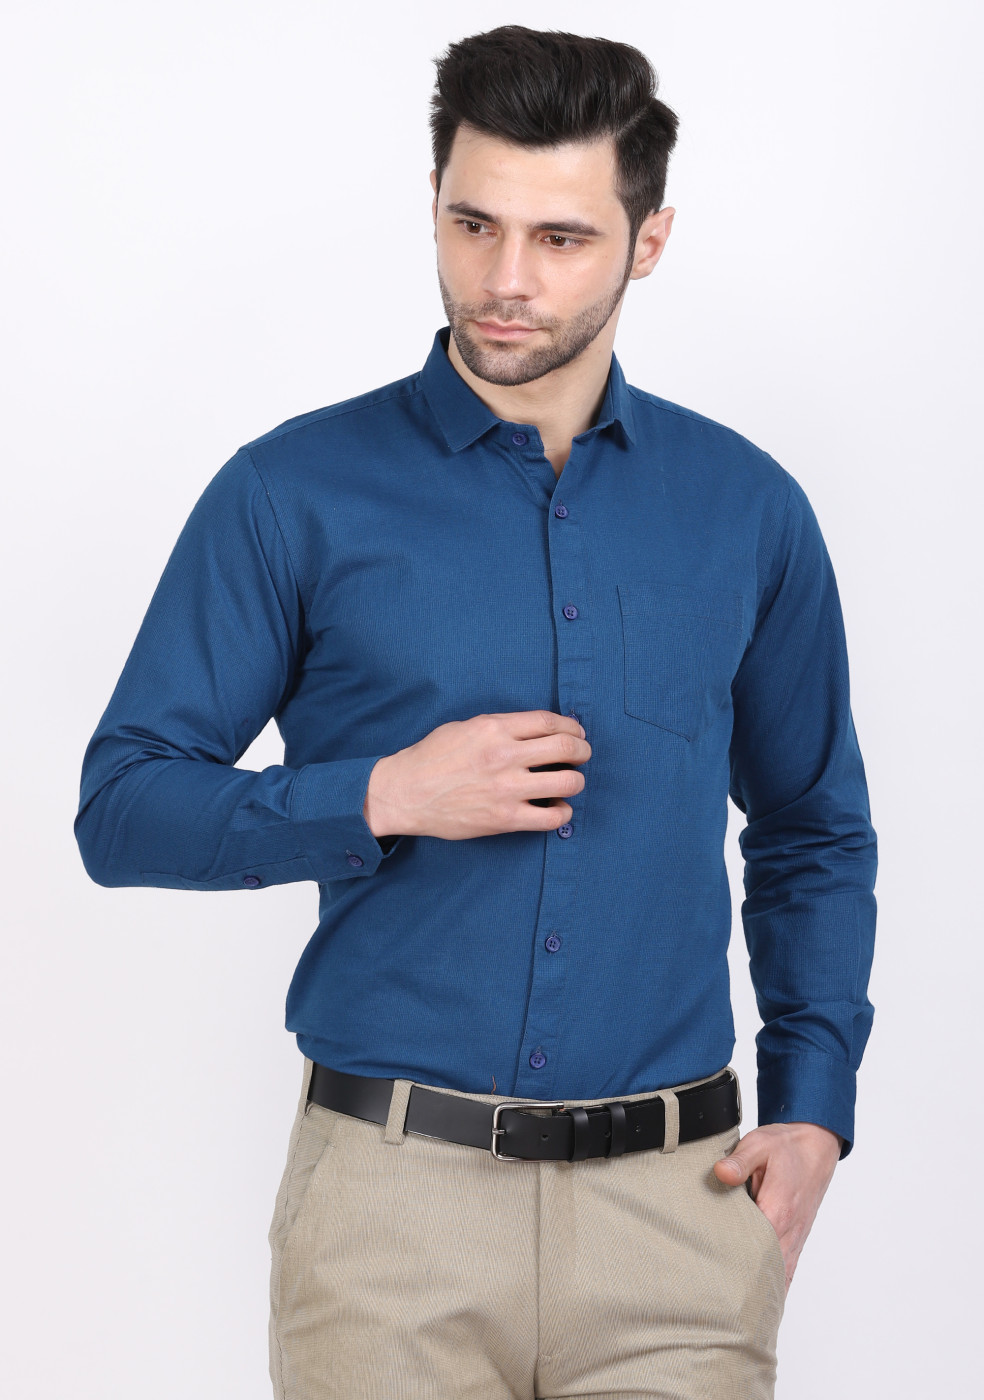 ASHTOM Airforce Color Plain Shirt For Men